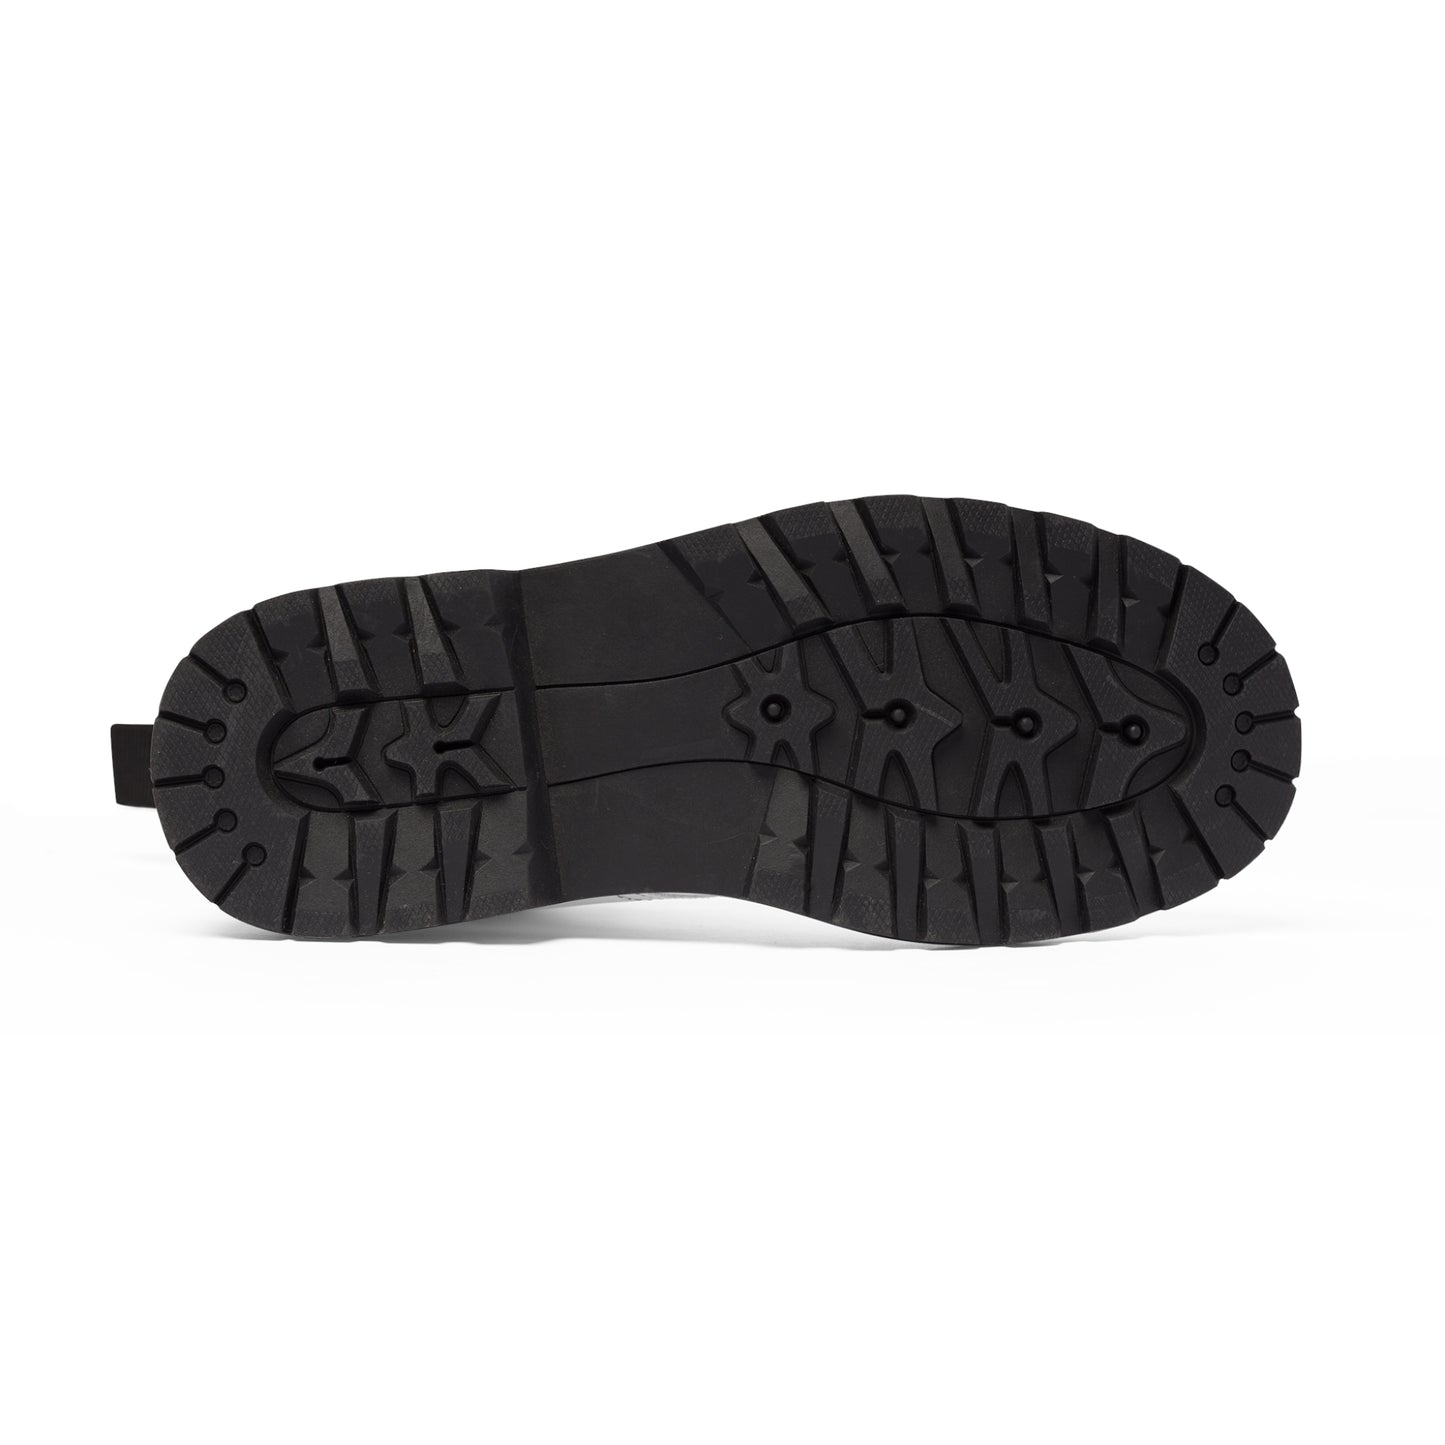 Women's Canvas Boots - 02870 US 11 Black sole